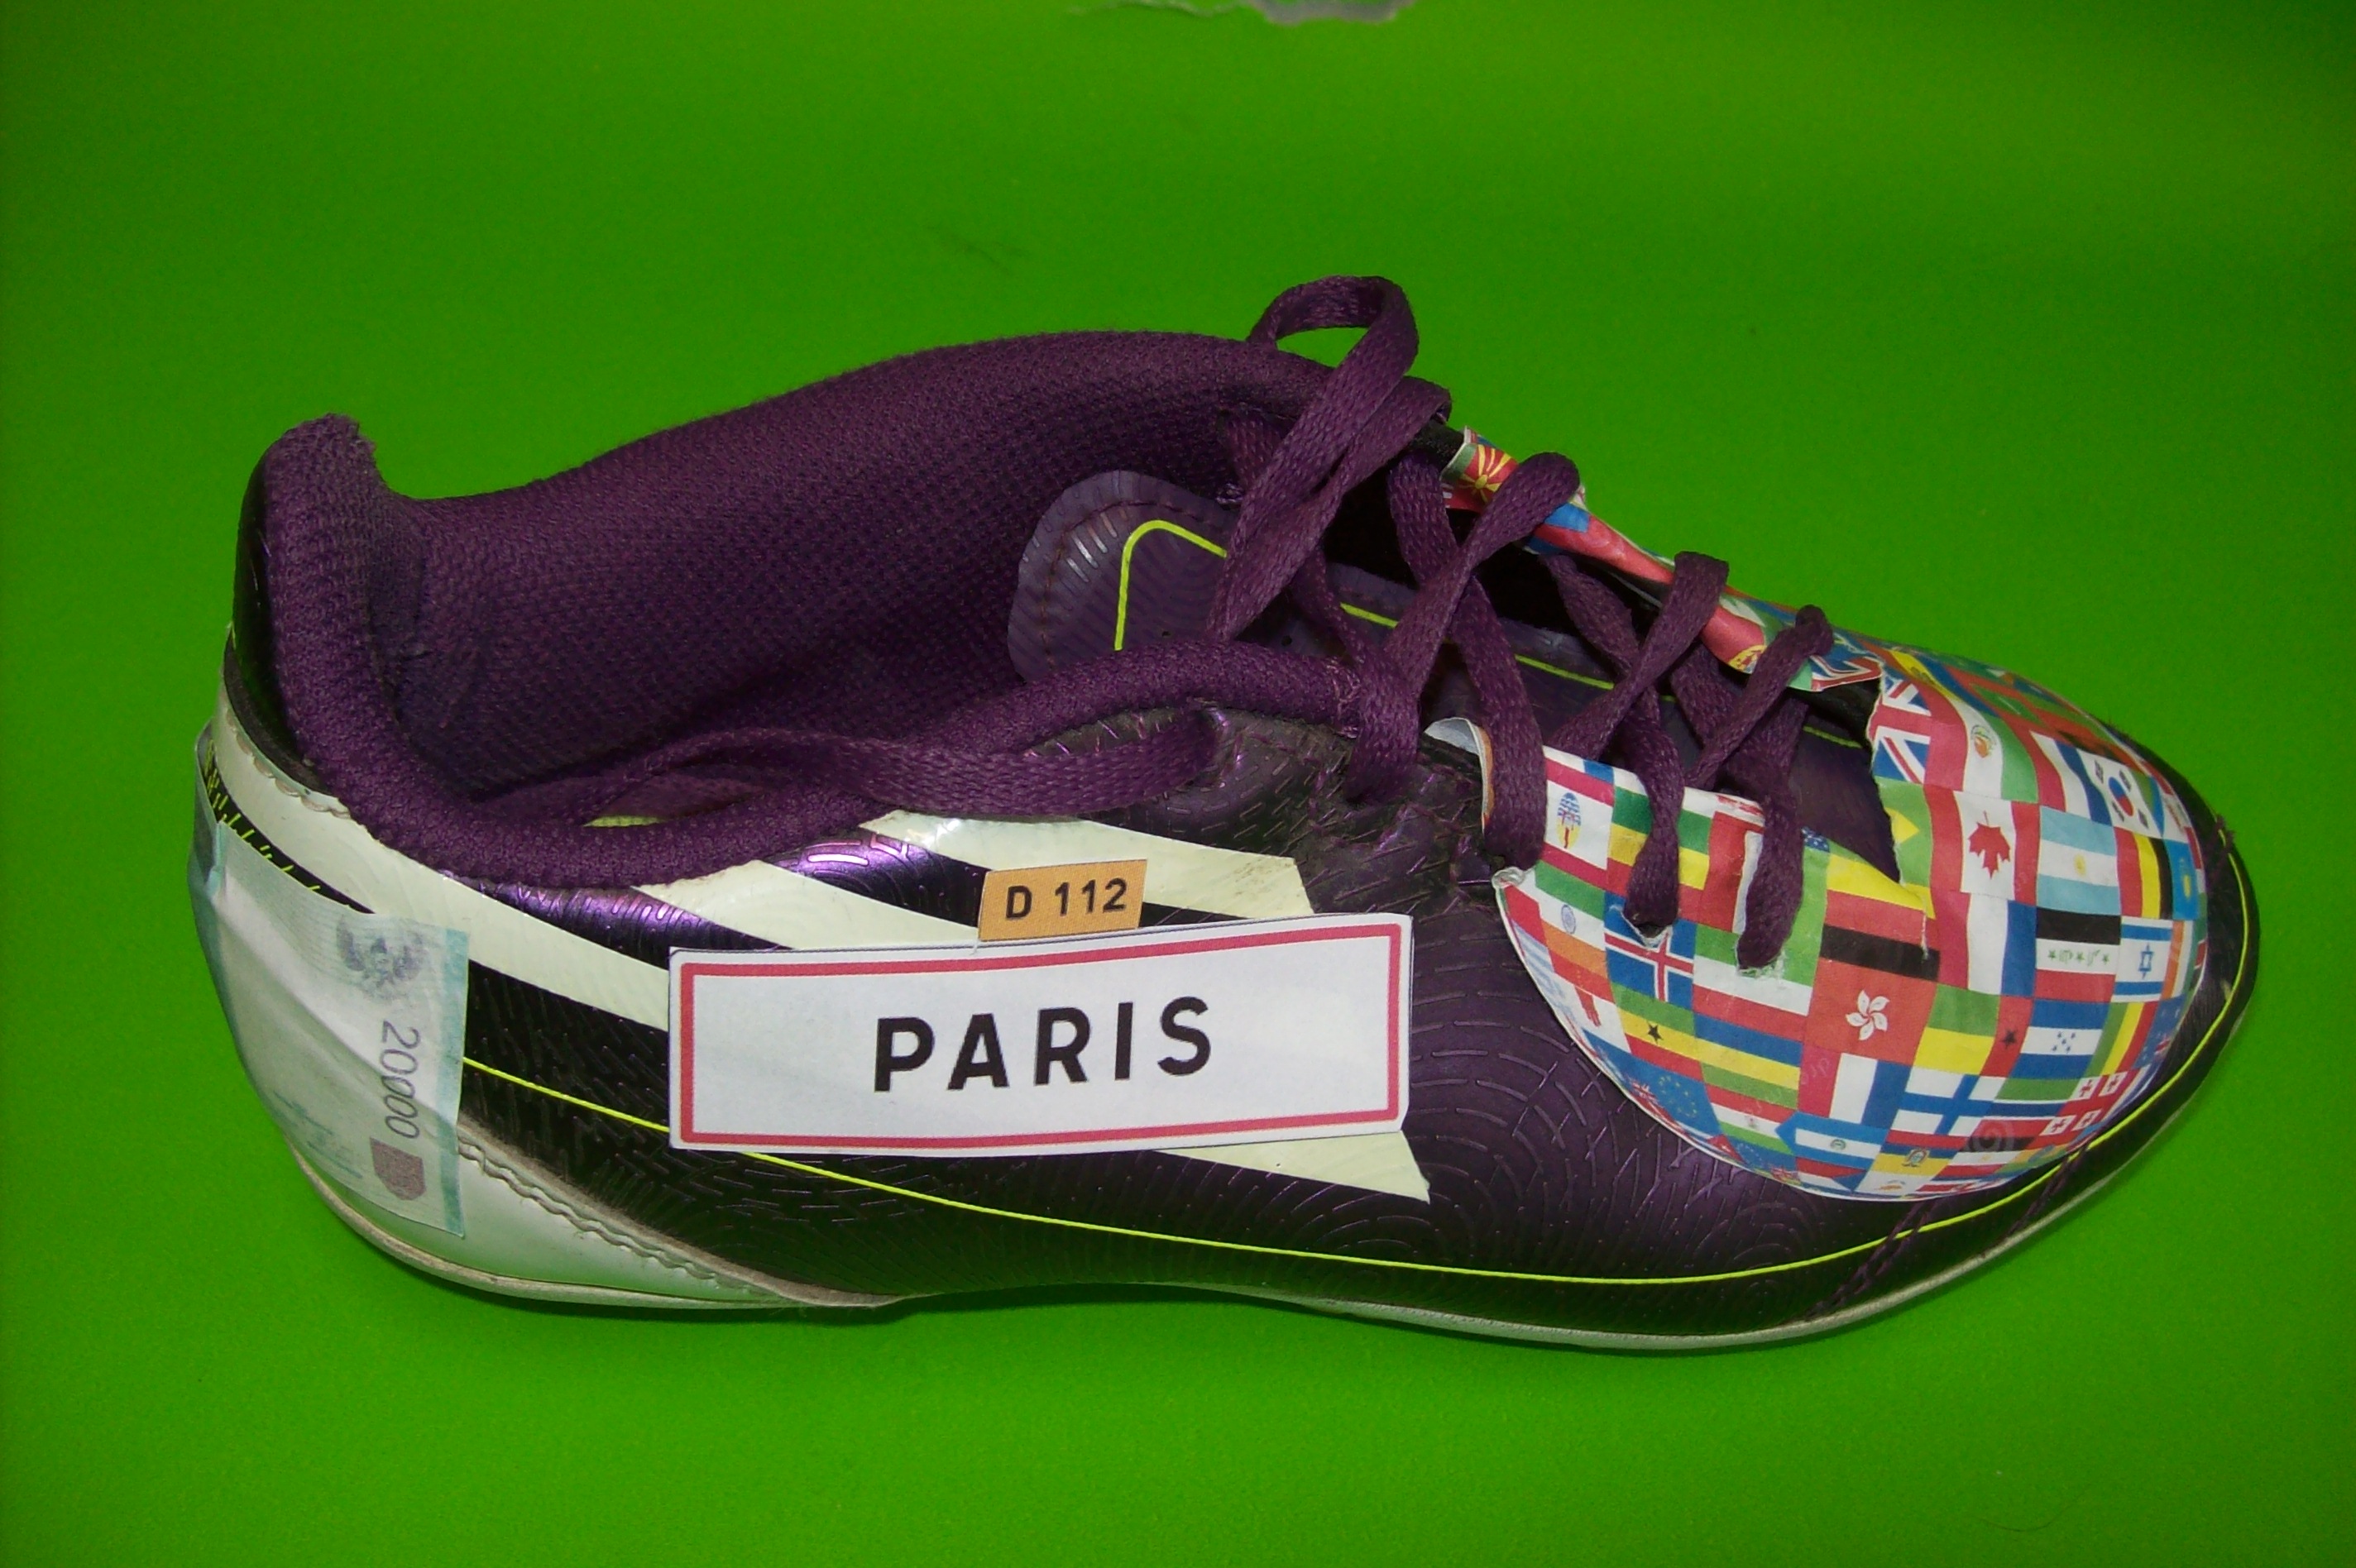 Le tour du monde en une chaussure - ARTARTART au collège ARThur Rimbaud